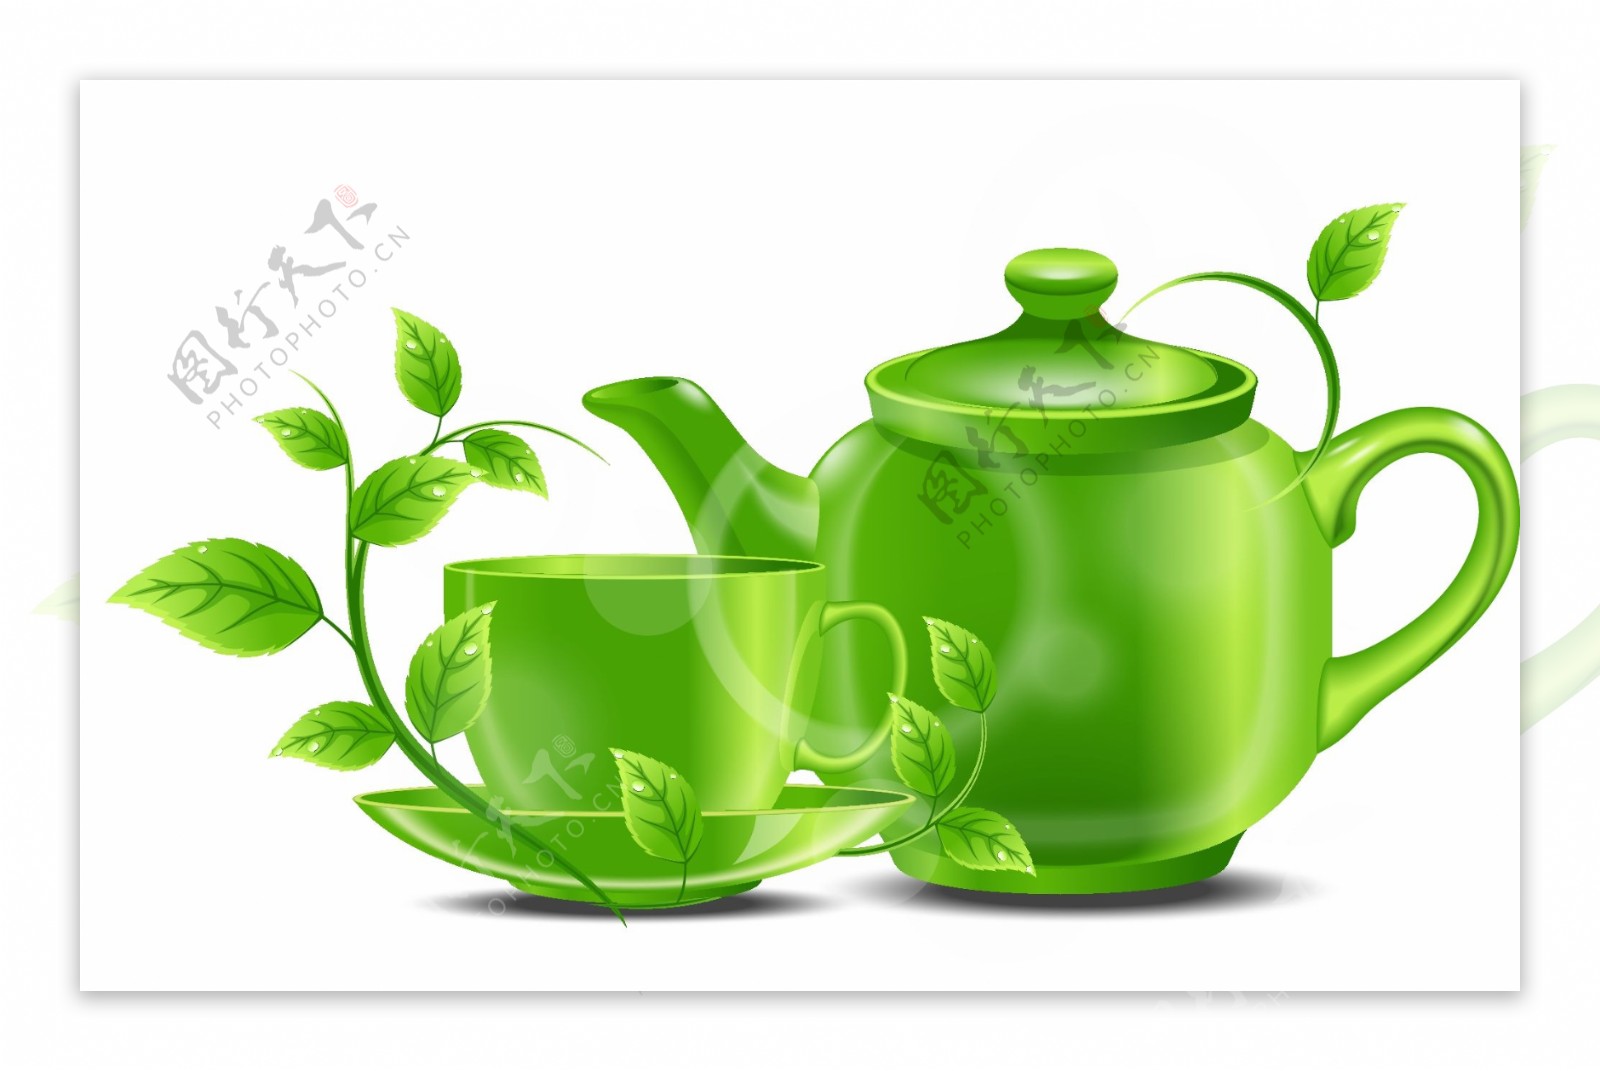 绿色薄荷与茶杯矢量图